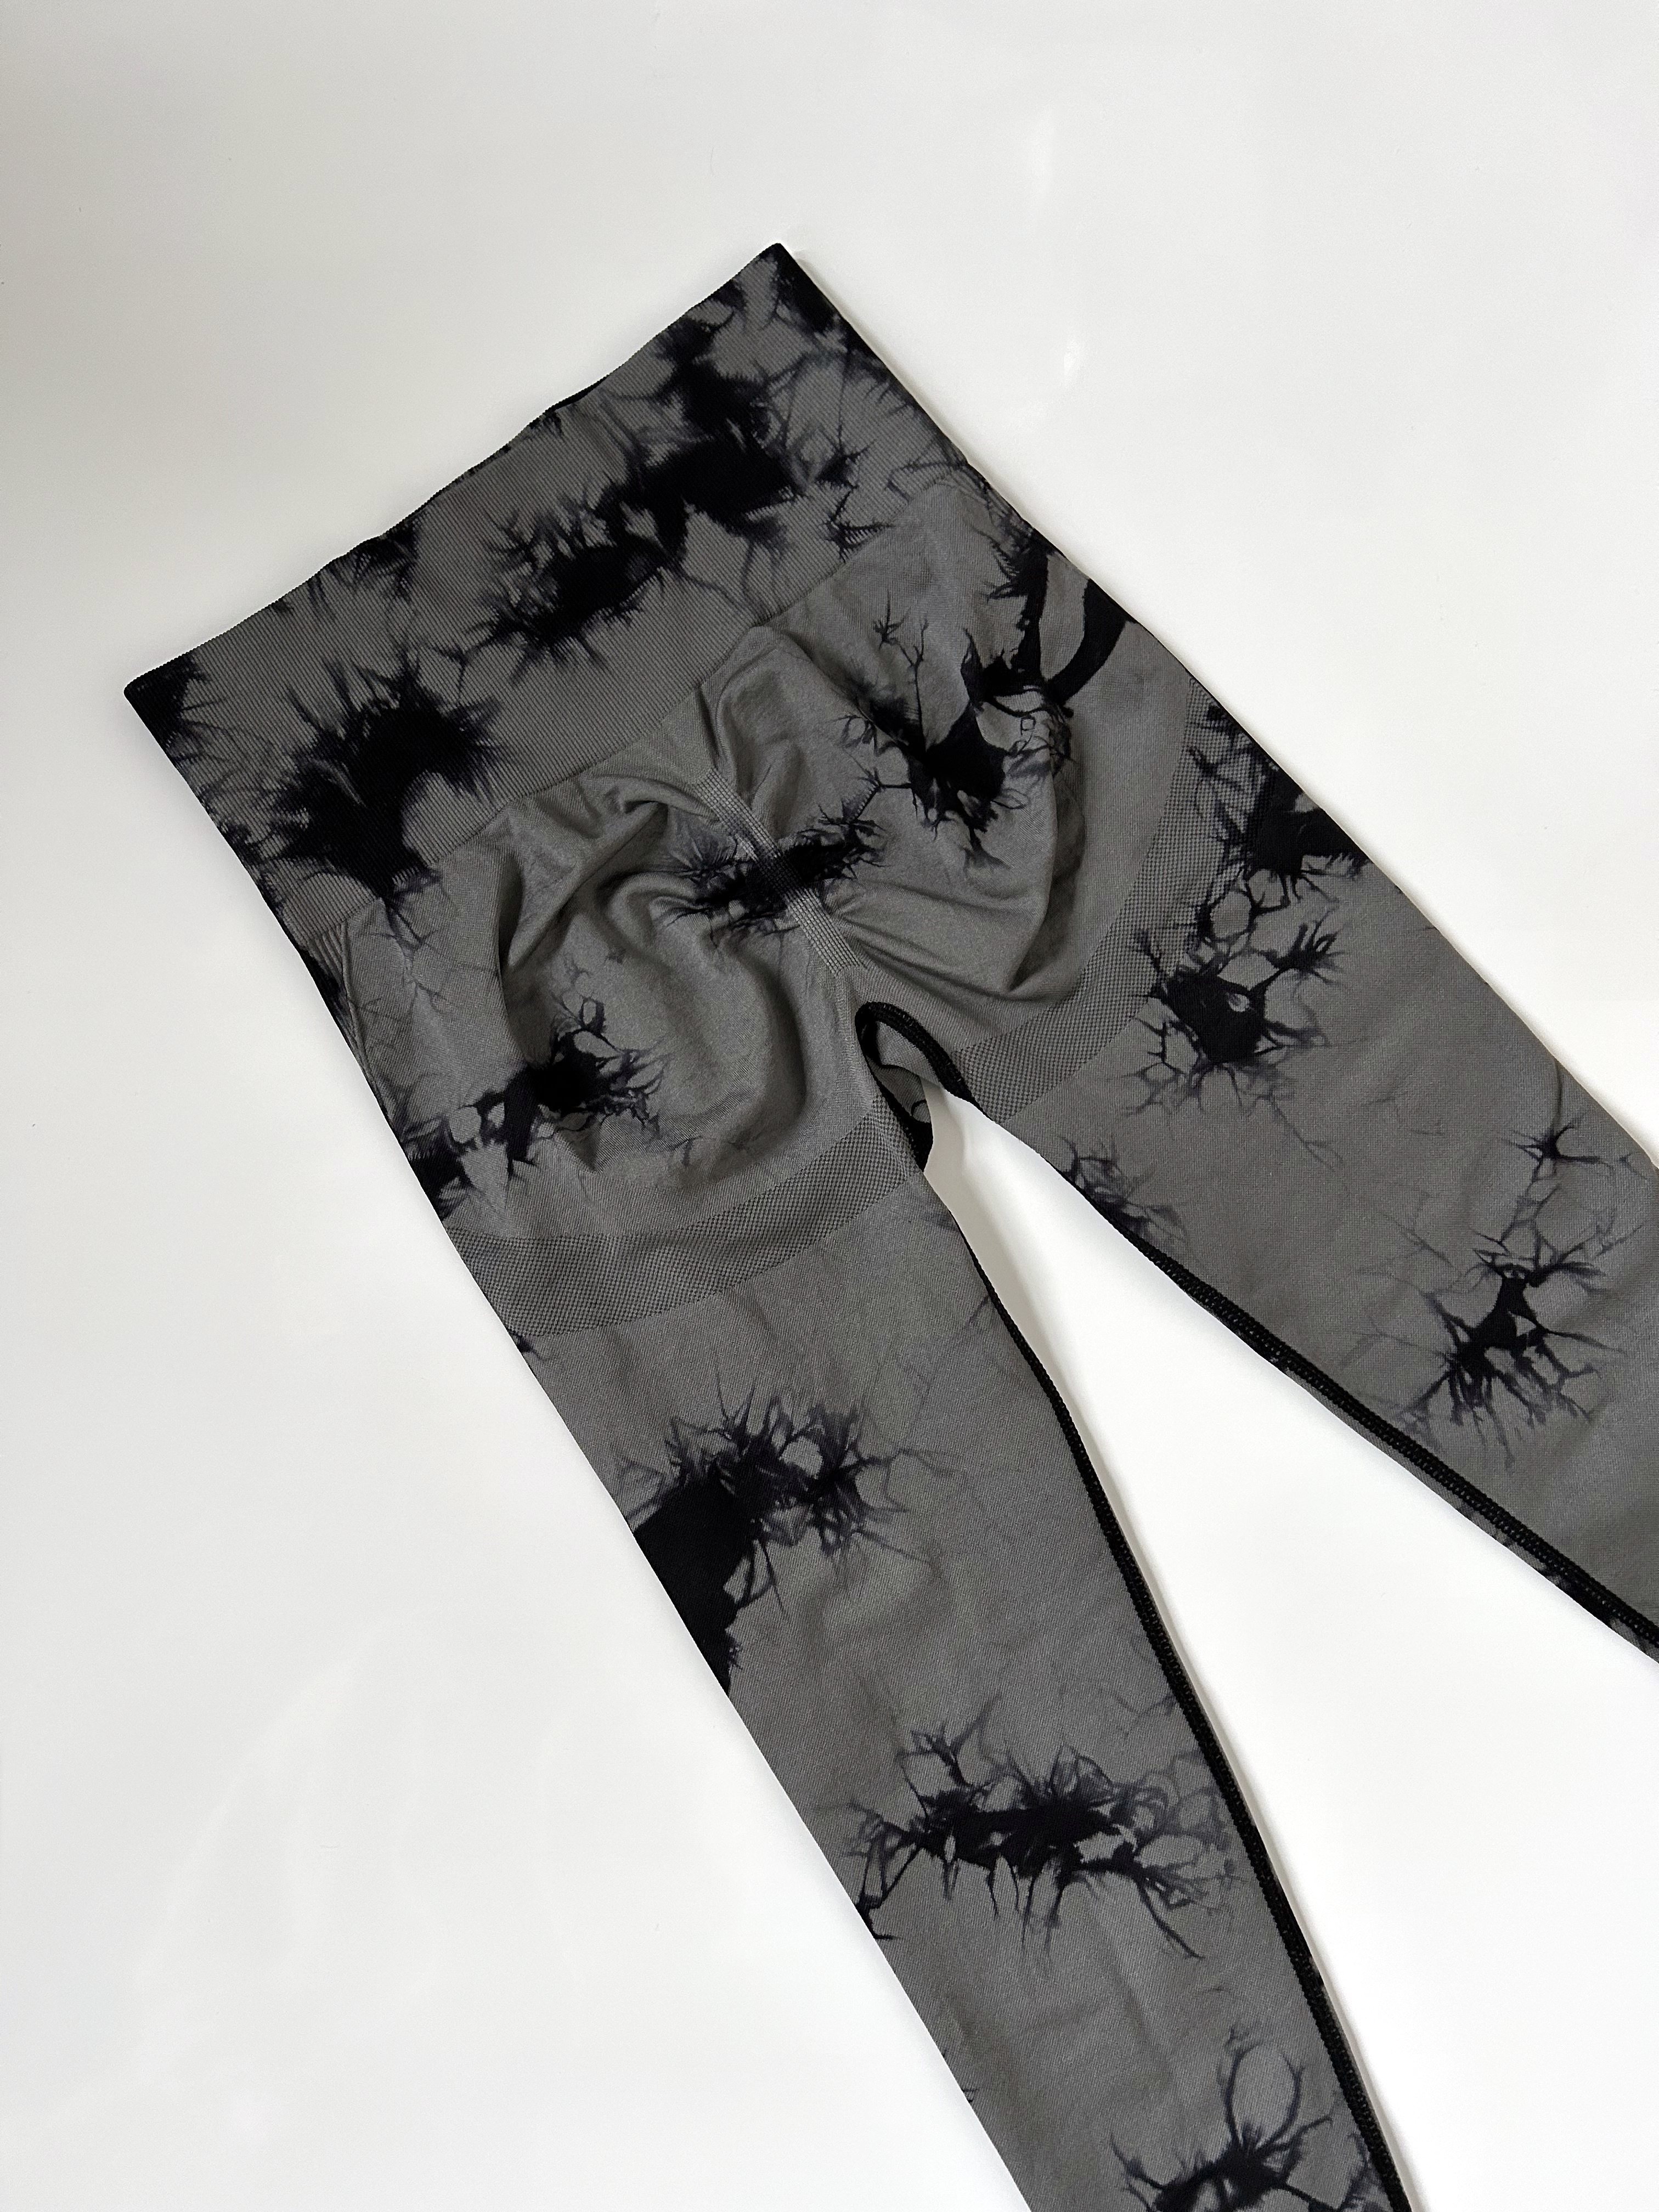 LEGGINGS With an Abstract Diamond Pattern Batik, Tie-dye Black-gray-white -   Hong Kong